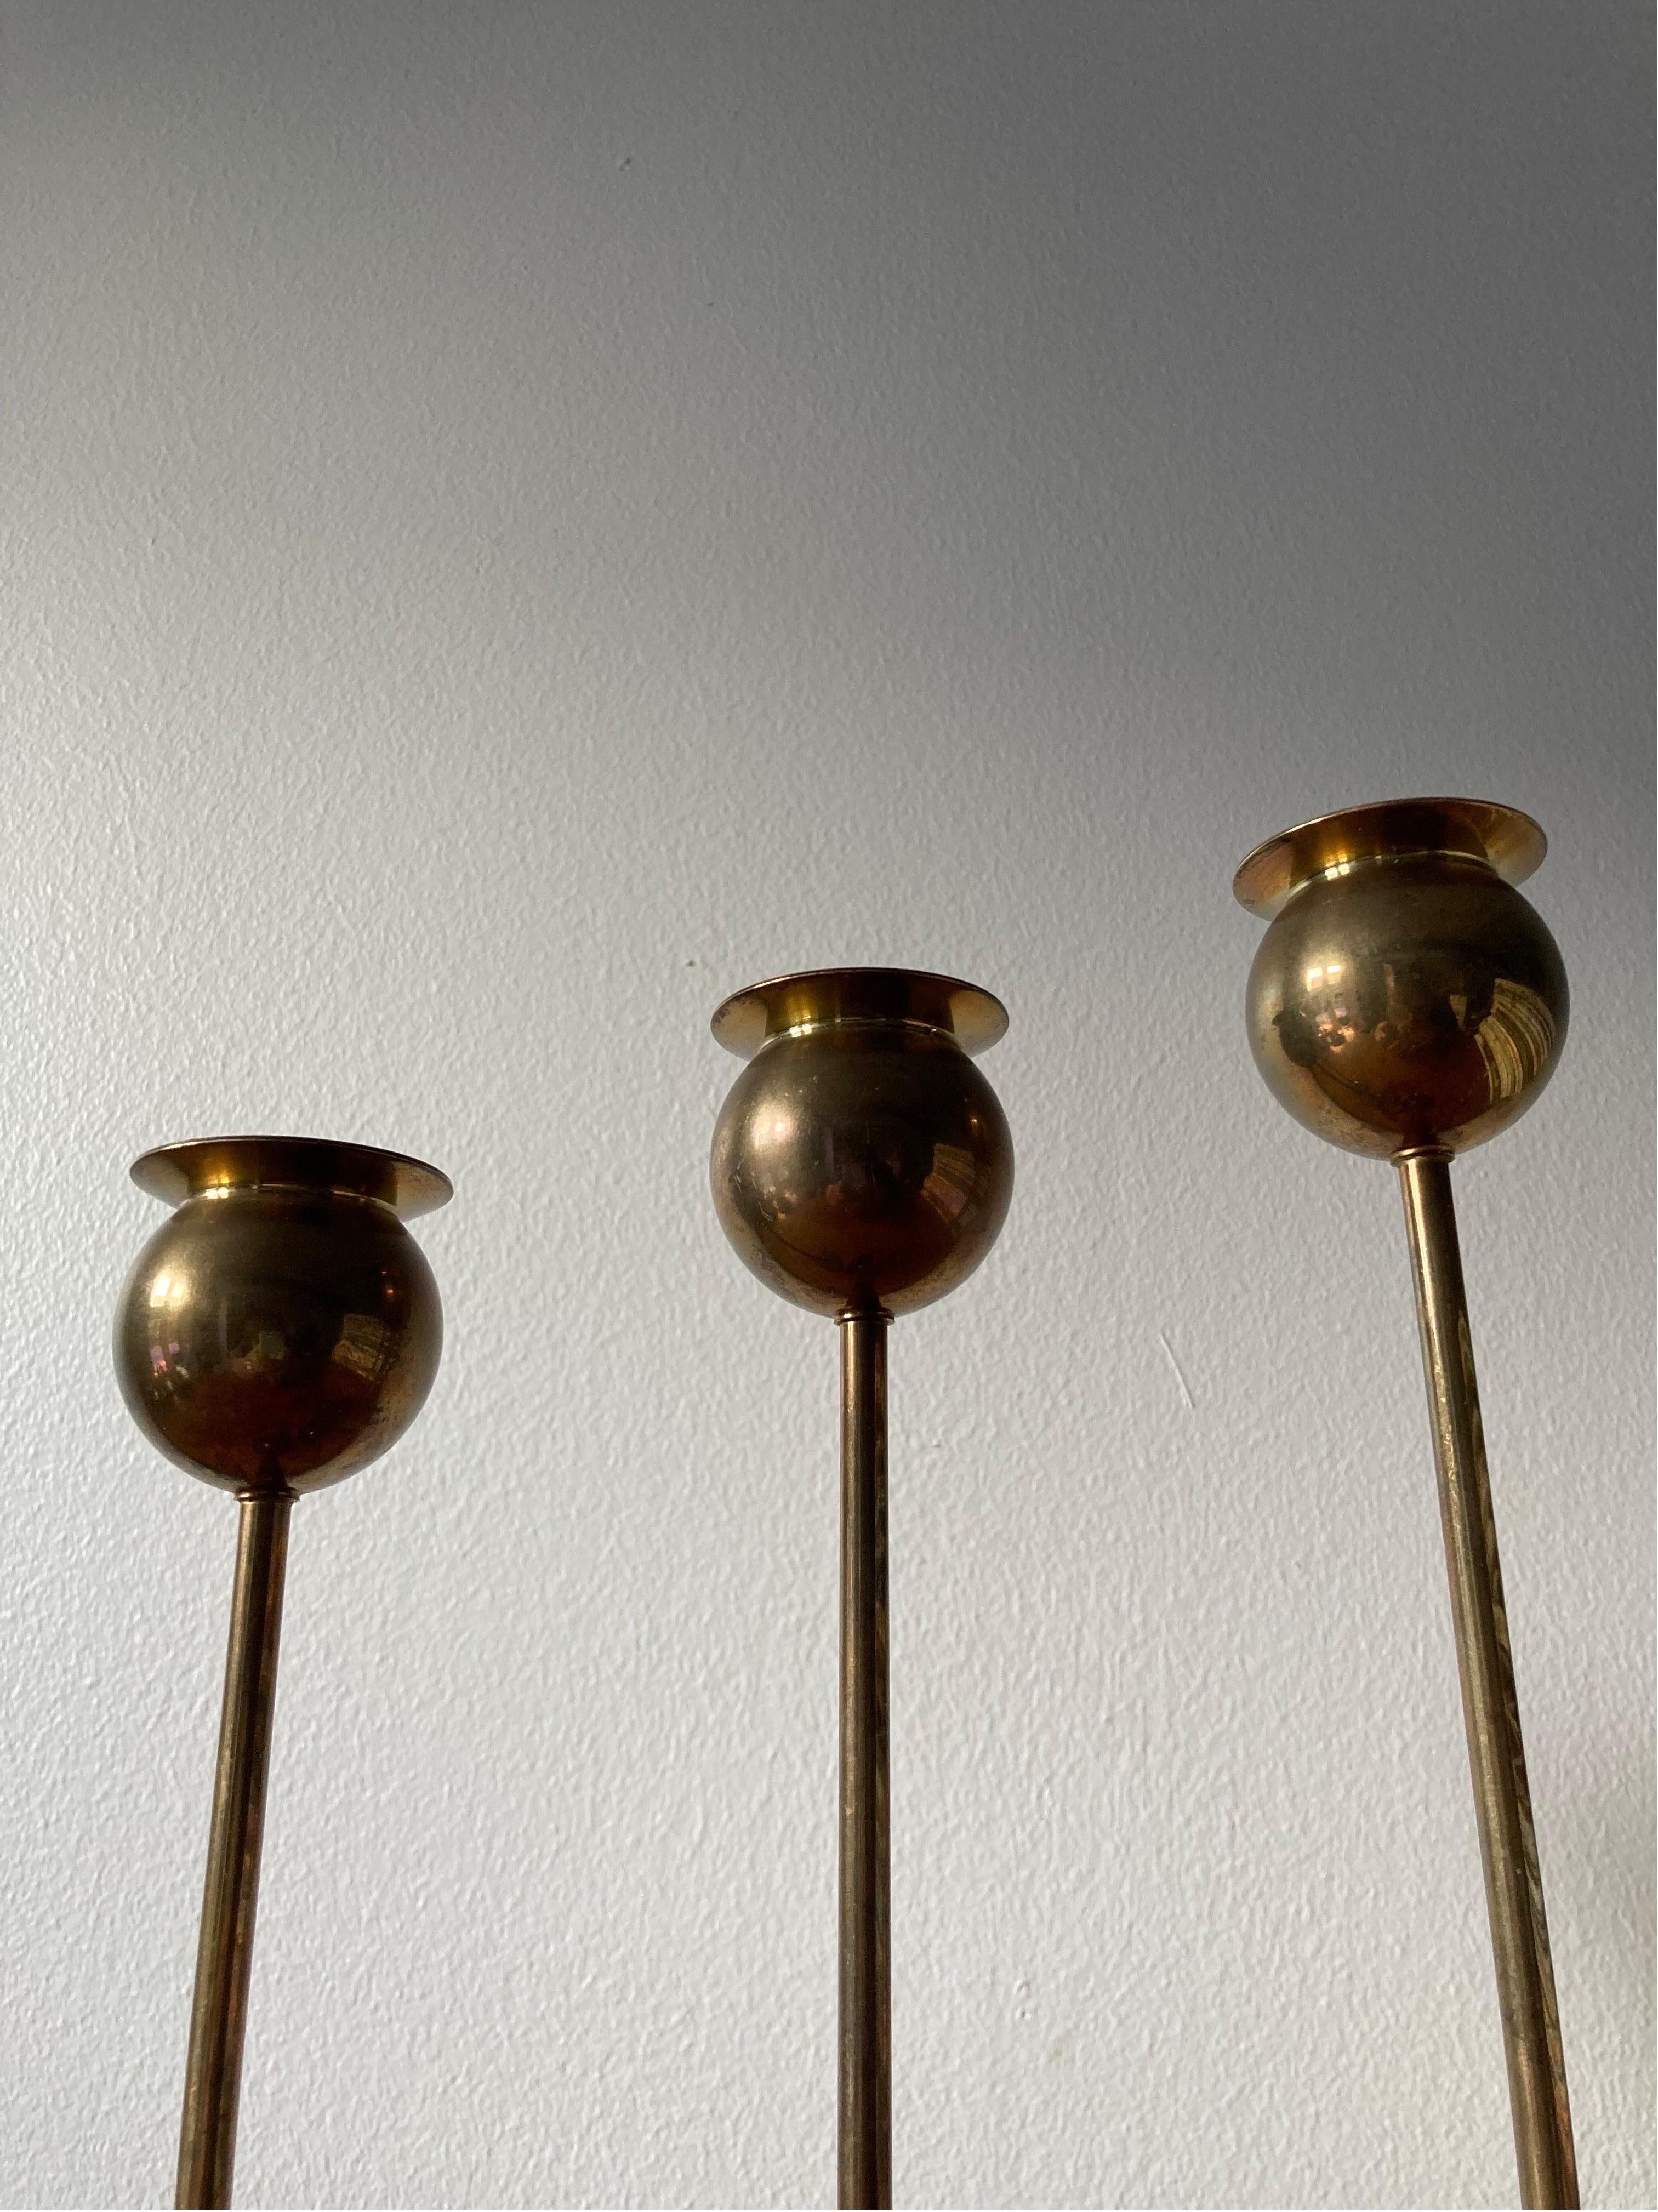 Satz von drei Pierre Forssell Tulpen-Kerzenhaltern aus Messing, hergestellt von Skultuna in den 1960er Jahren.

Die Kerzenhalter sind aus massivem Messing gefertigt und haben eine schöne natürliche Patina.
 